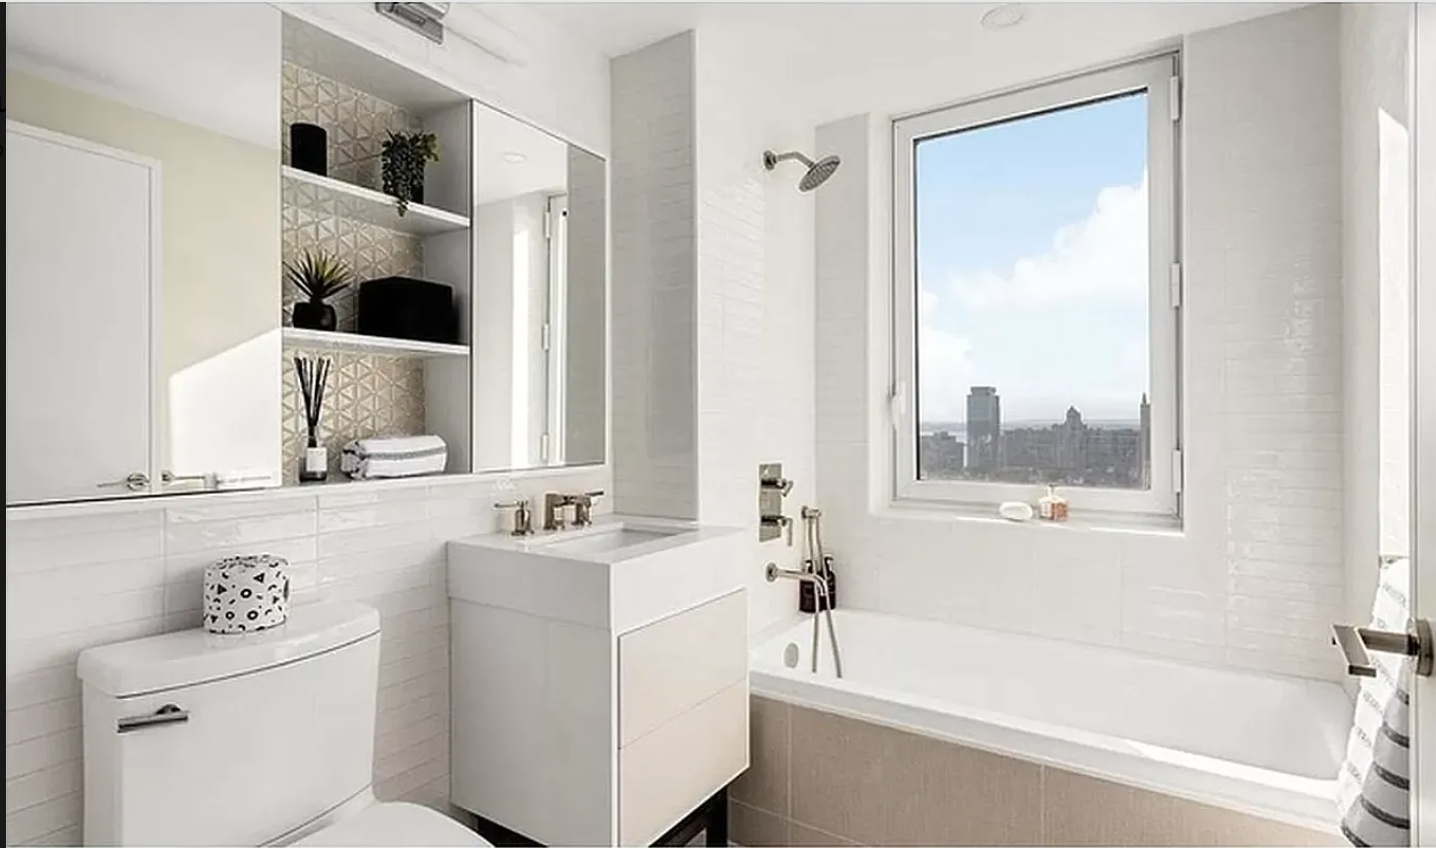 a bathroom with a bathtub sink and mirror